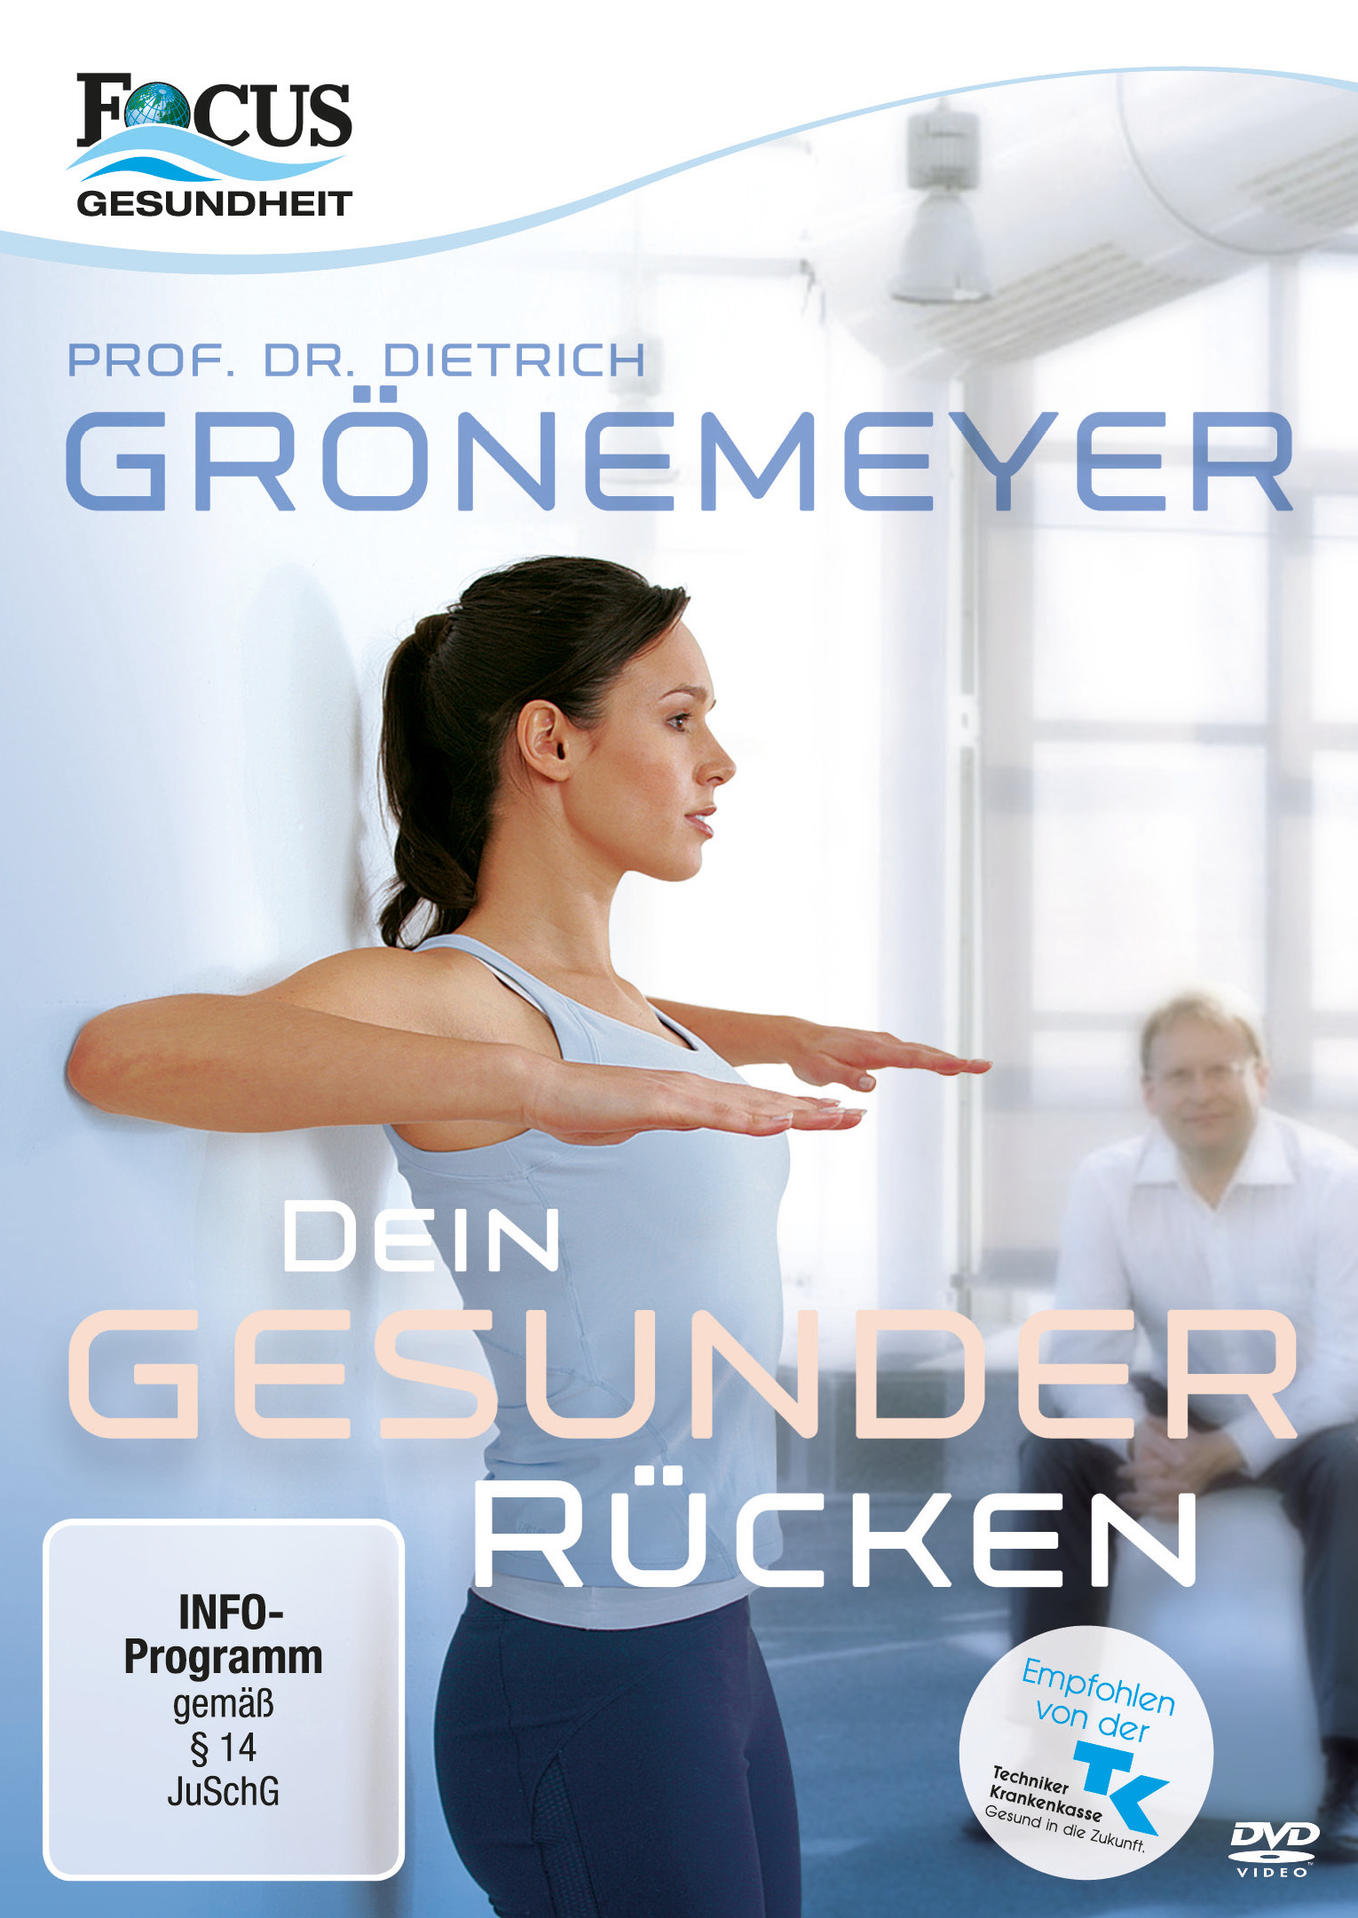 Dr. Dietrich Dein Prof. Rücken DVD gesunder Grönemeyer: